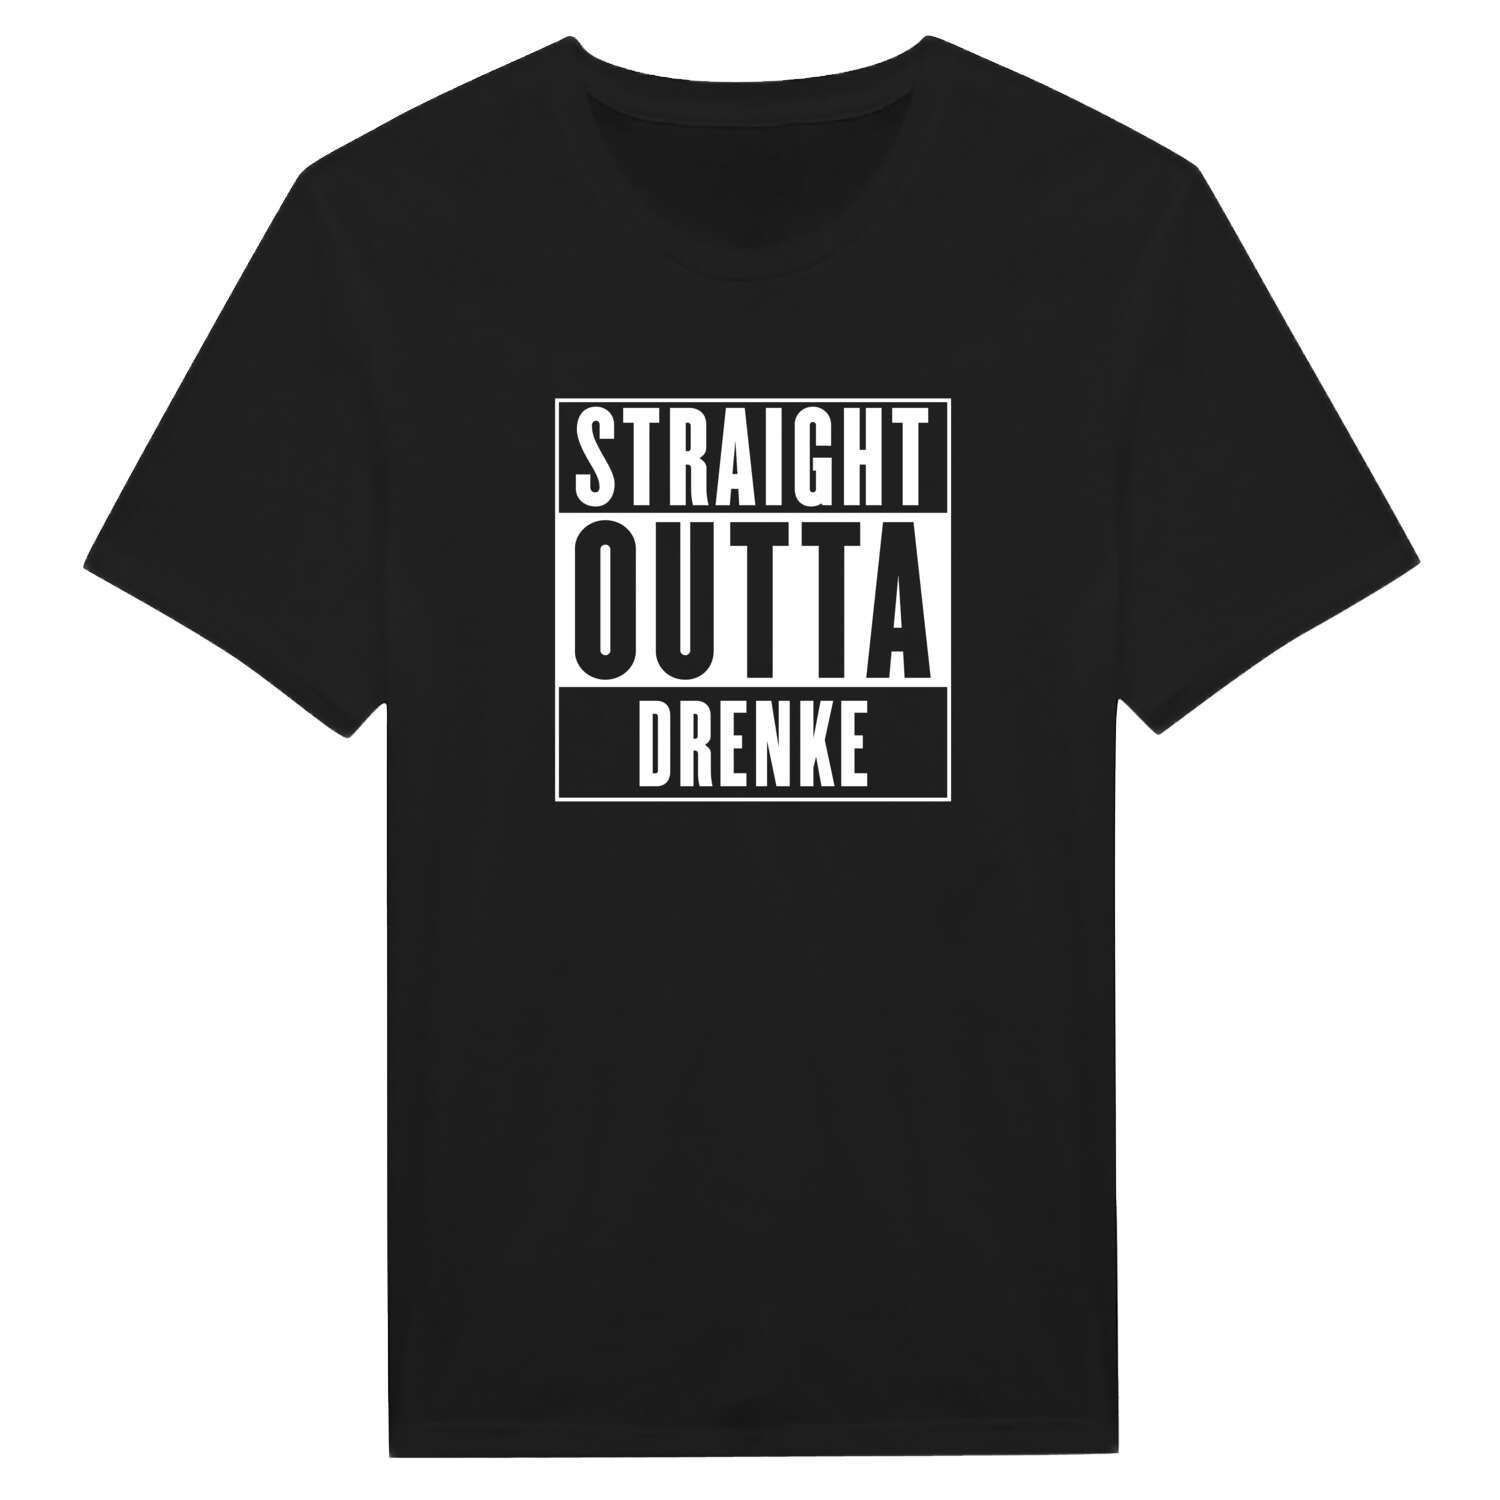 Drenke T-Shirt »Straight Outta«